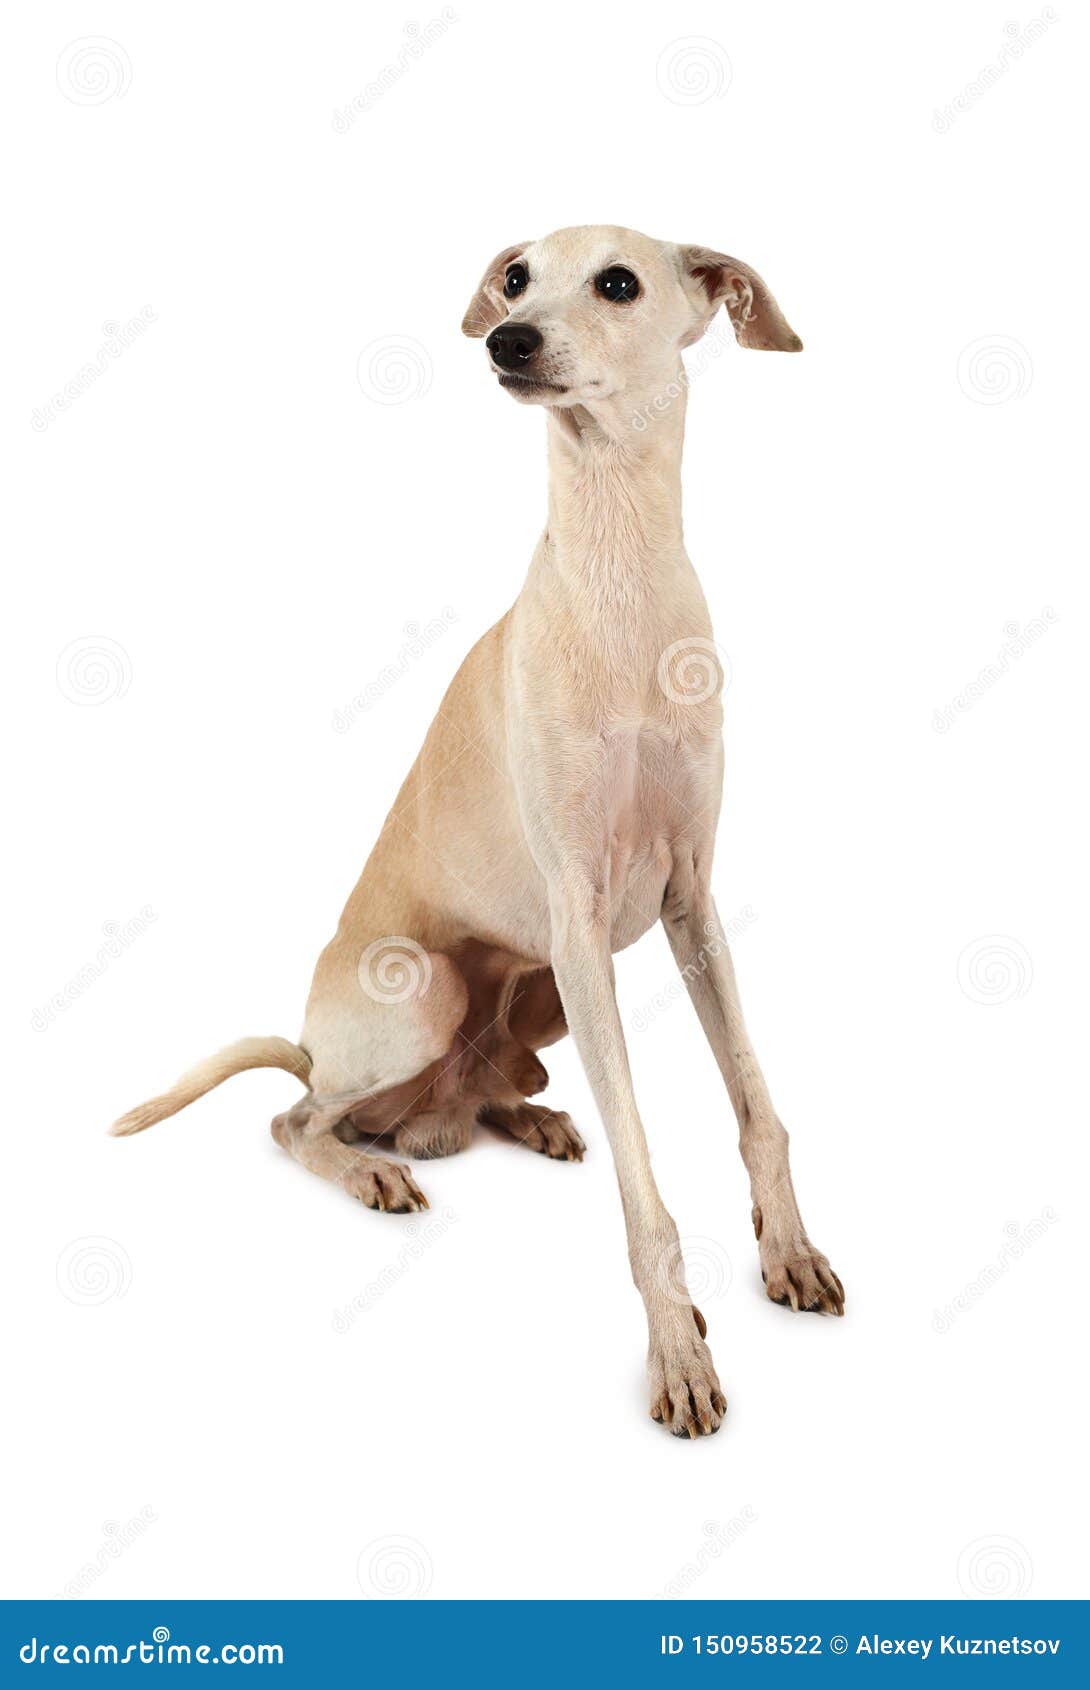 italian greyhound dogÃÂ  on a white